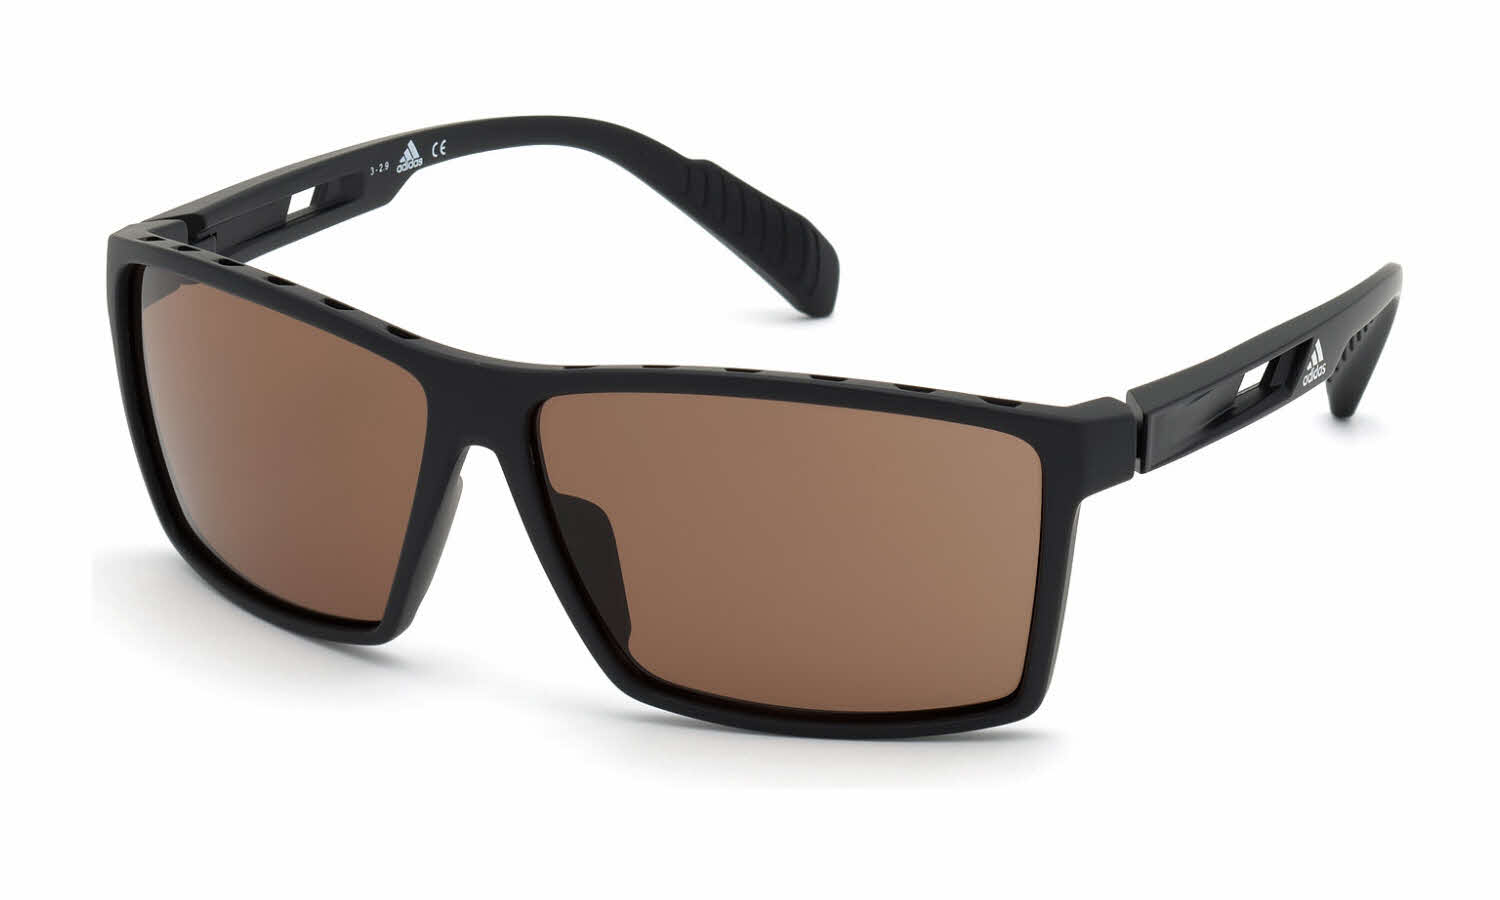 Adidas SP0010 Men's Sunglasses In Black